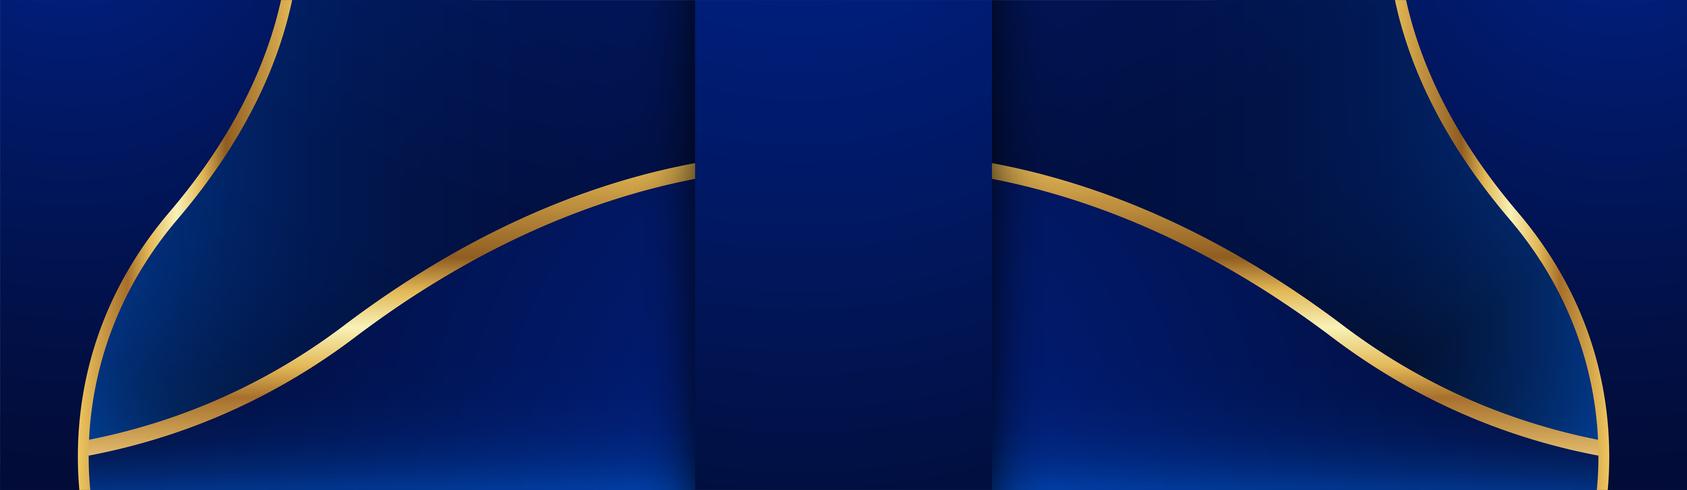 Astratto sfondo blu in stile indiano premium. Template design per copertina, presentazione aziendale, banner web, invito a nozze e packaging di lusso. Illustrazione vettoriale con bordo dorato.